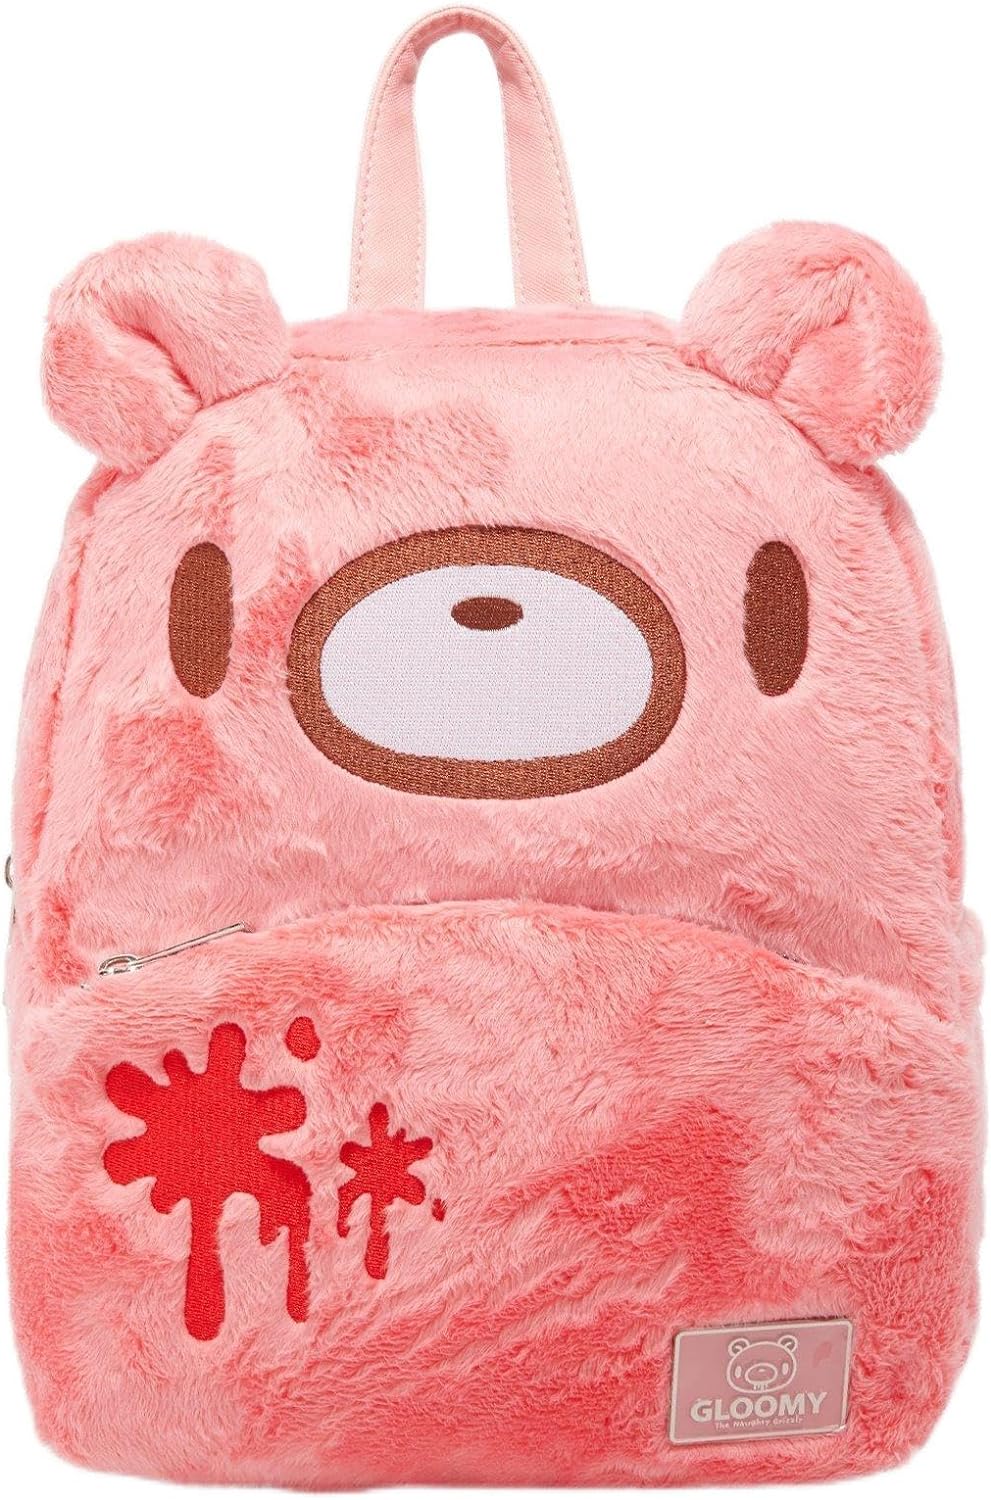 Gloomy Bear Plush Backpack [PINK]